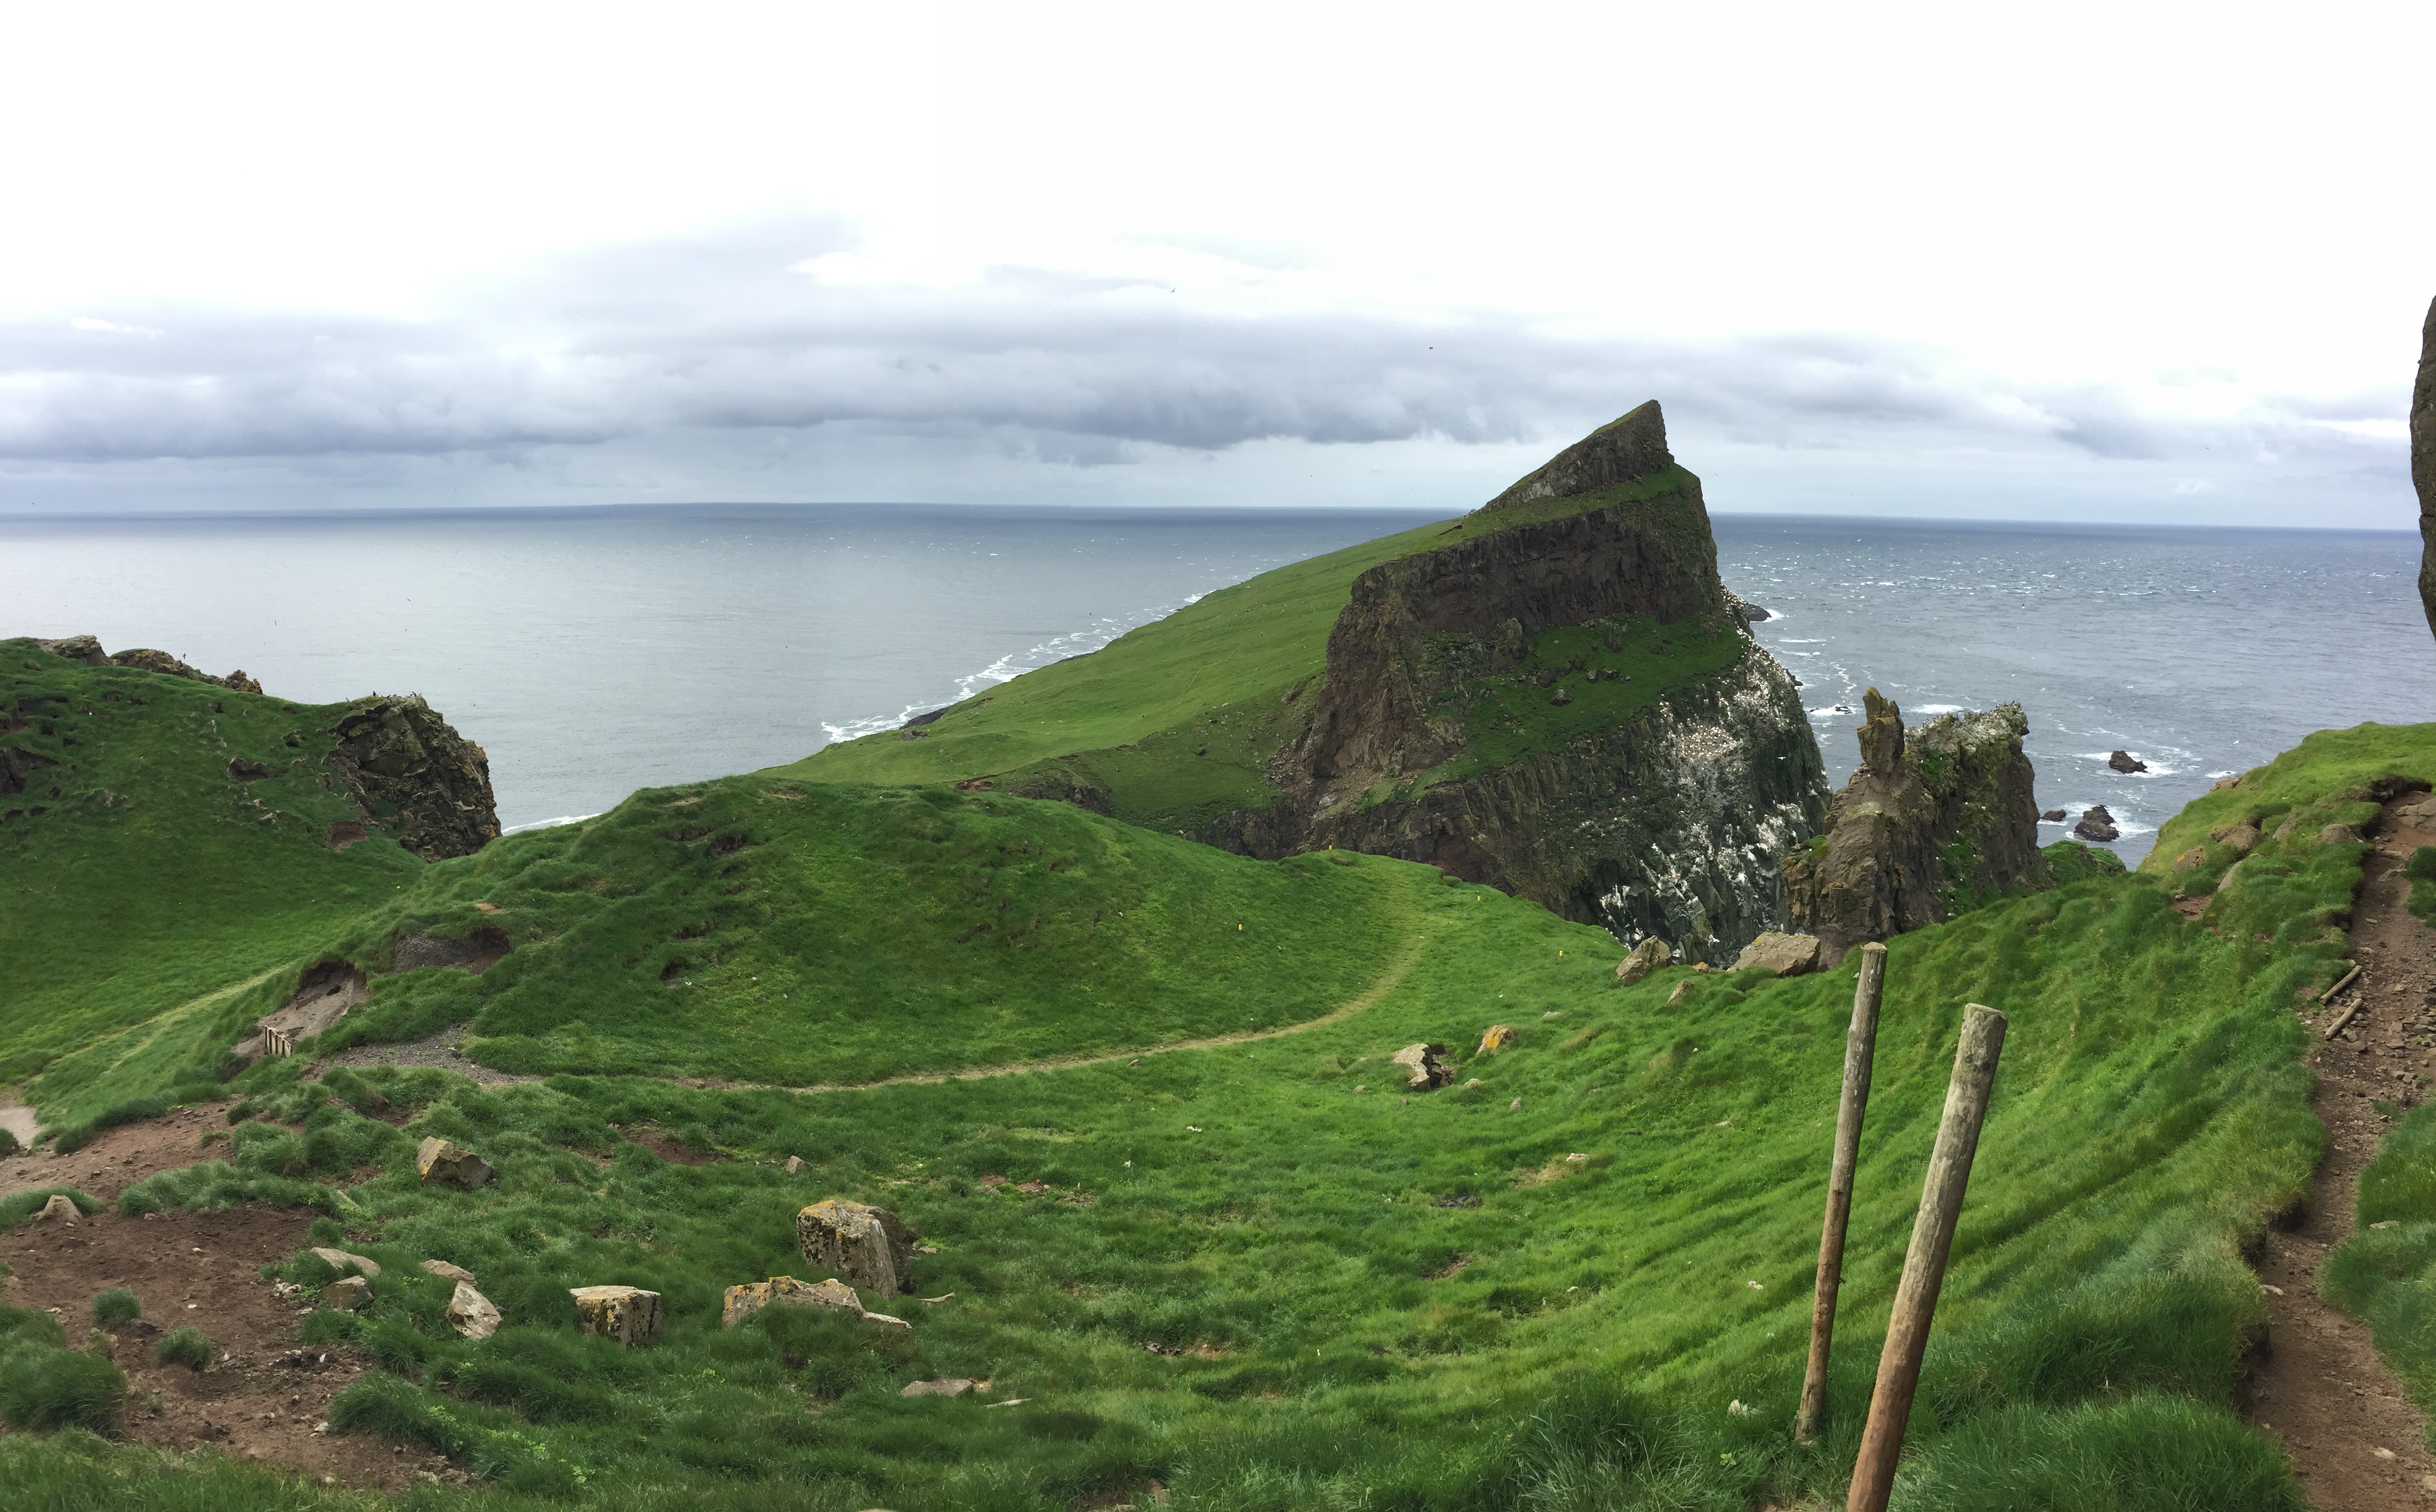 Diario de Viaje Islas Feroe - El Reino de Thor - Blogs of Denmark - DIA 2 - Mykines, el hogar de los frailecillos (9)